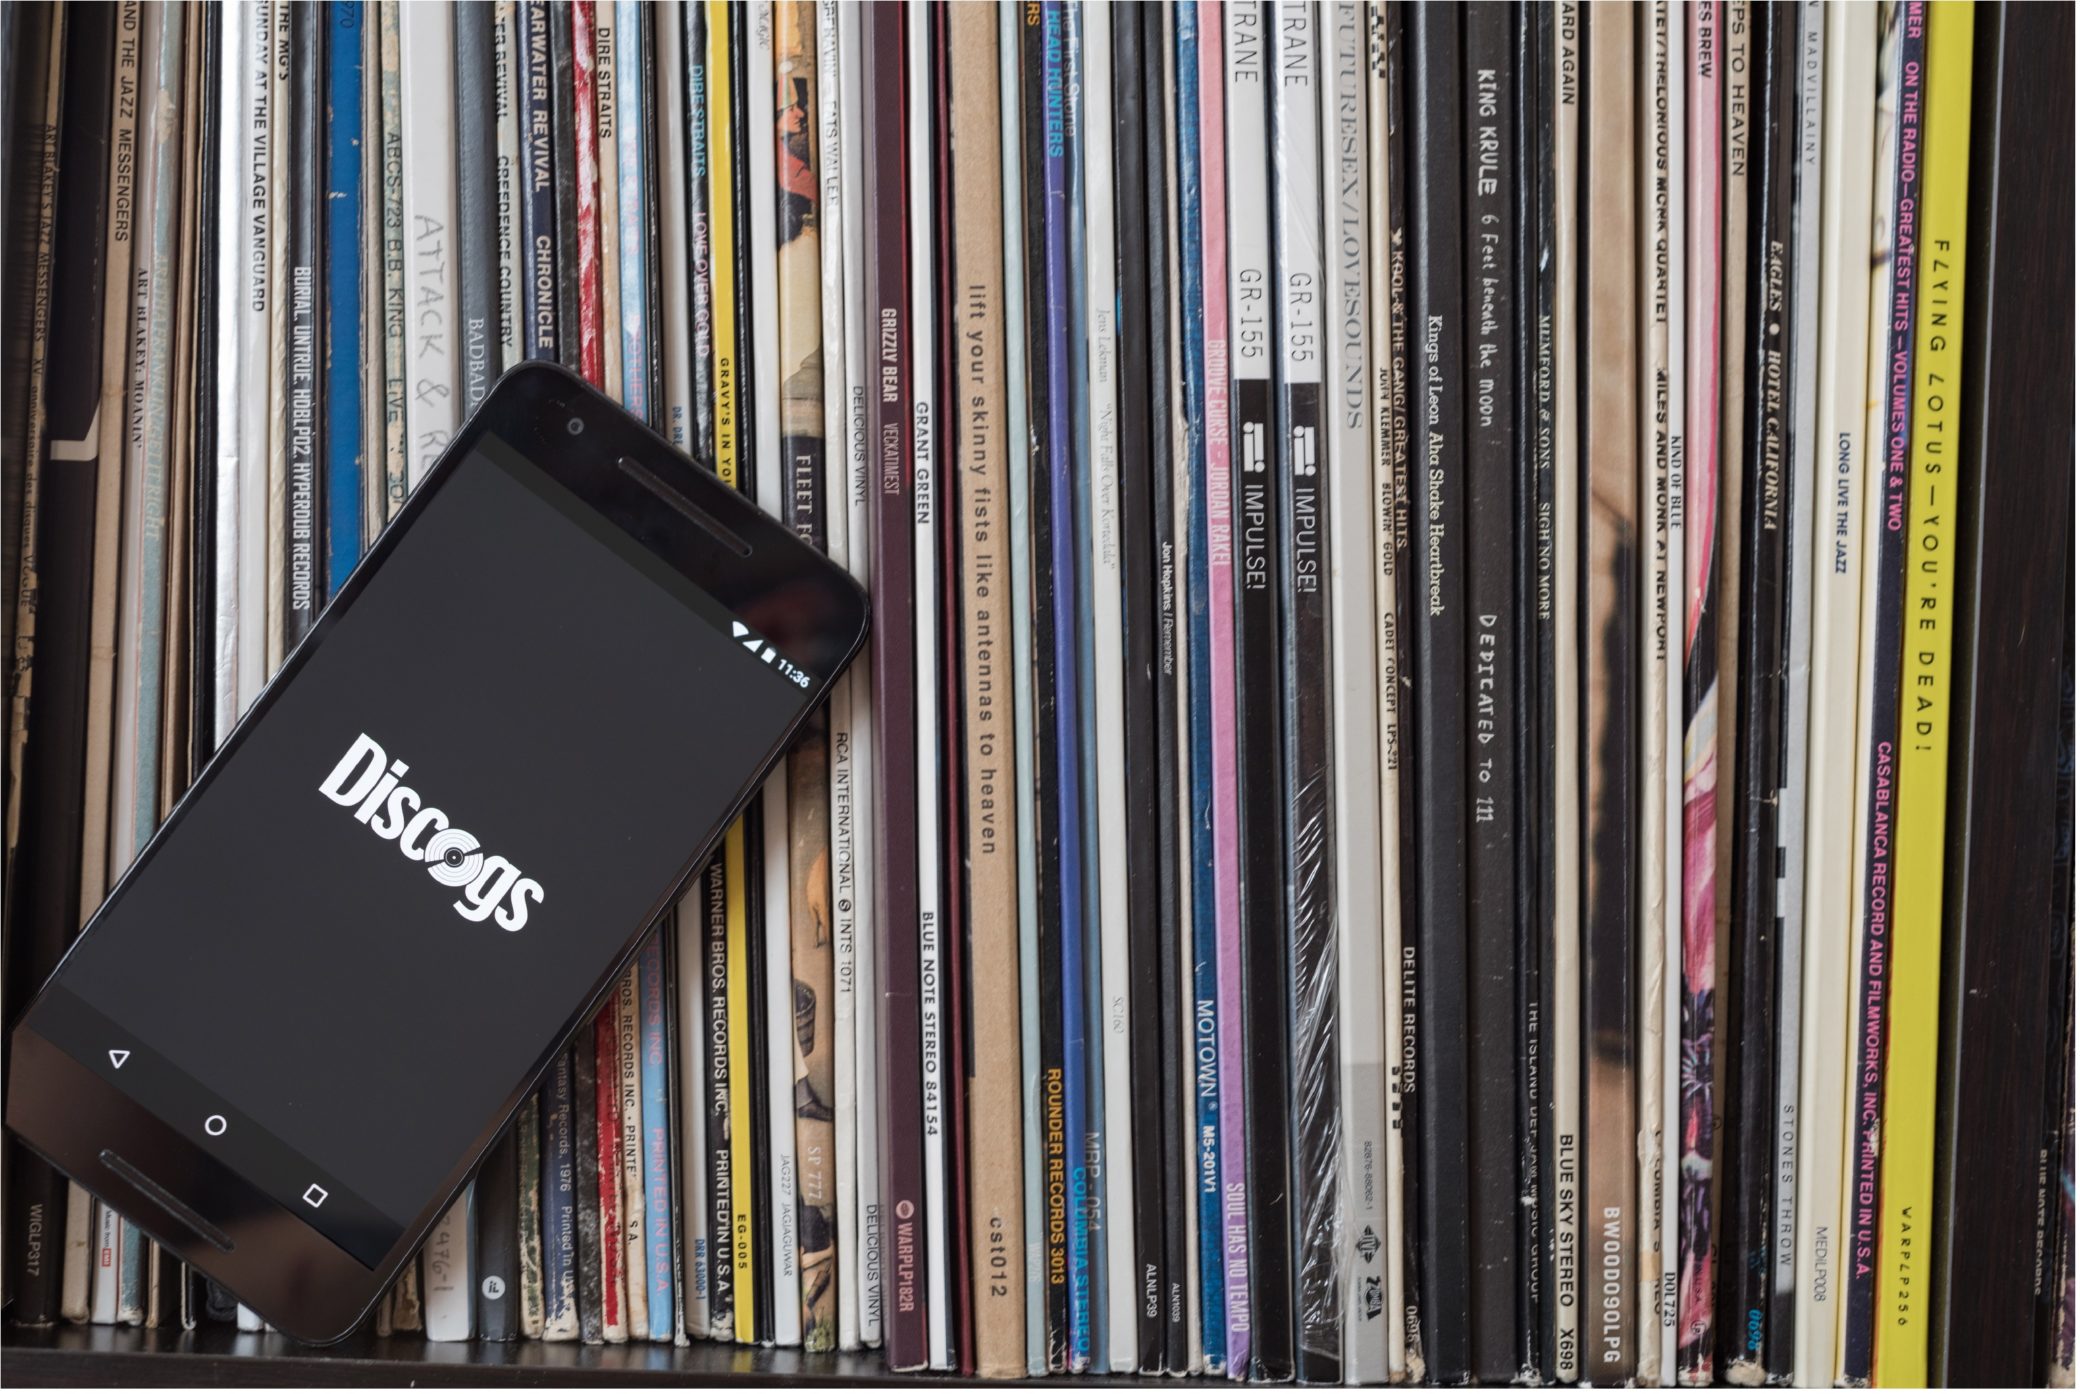 База данных Discogs достигла отметки в 5 миллионов исполнителей и 8.5 миллионов записей